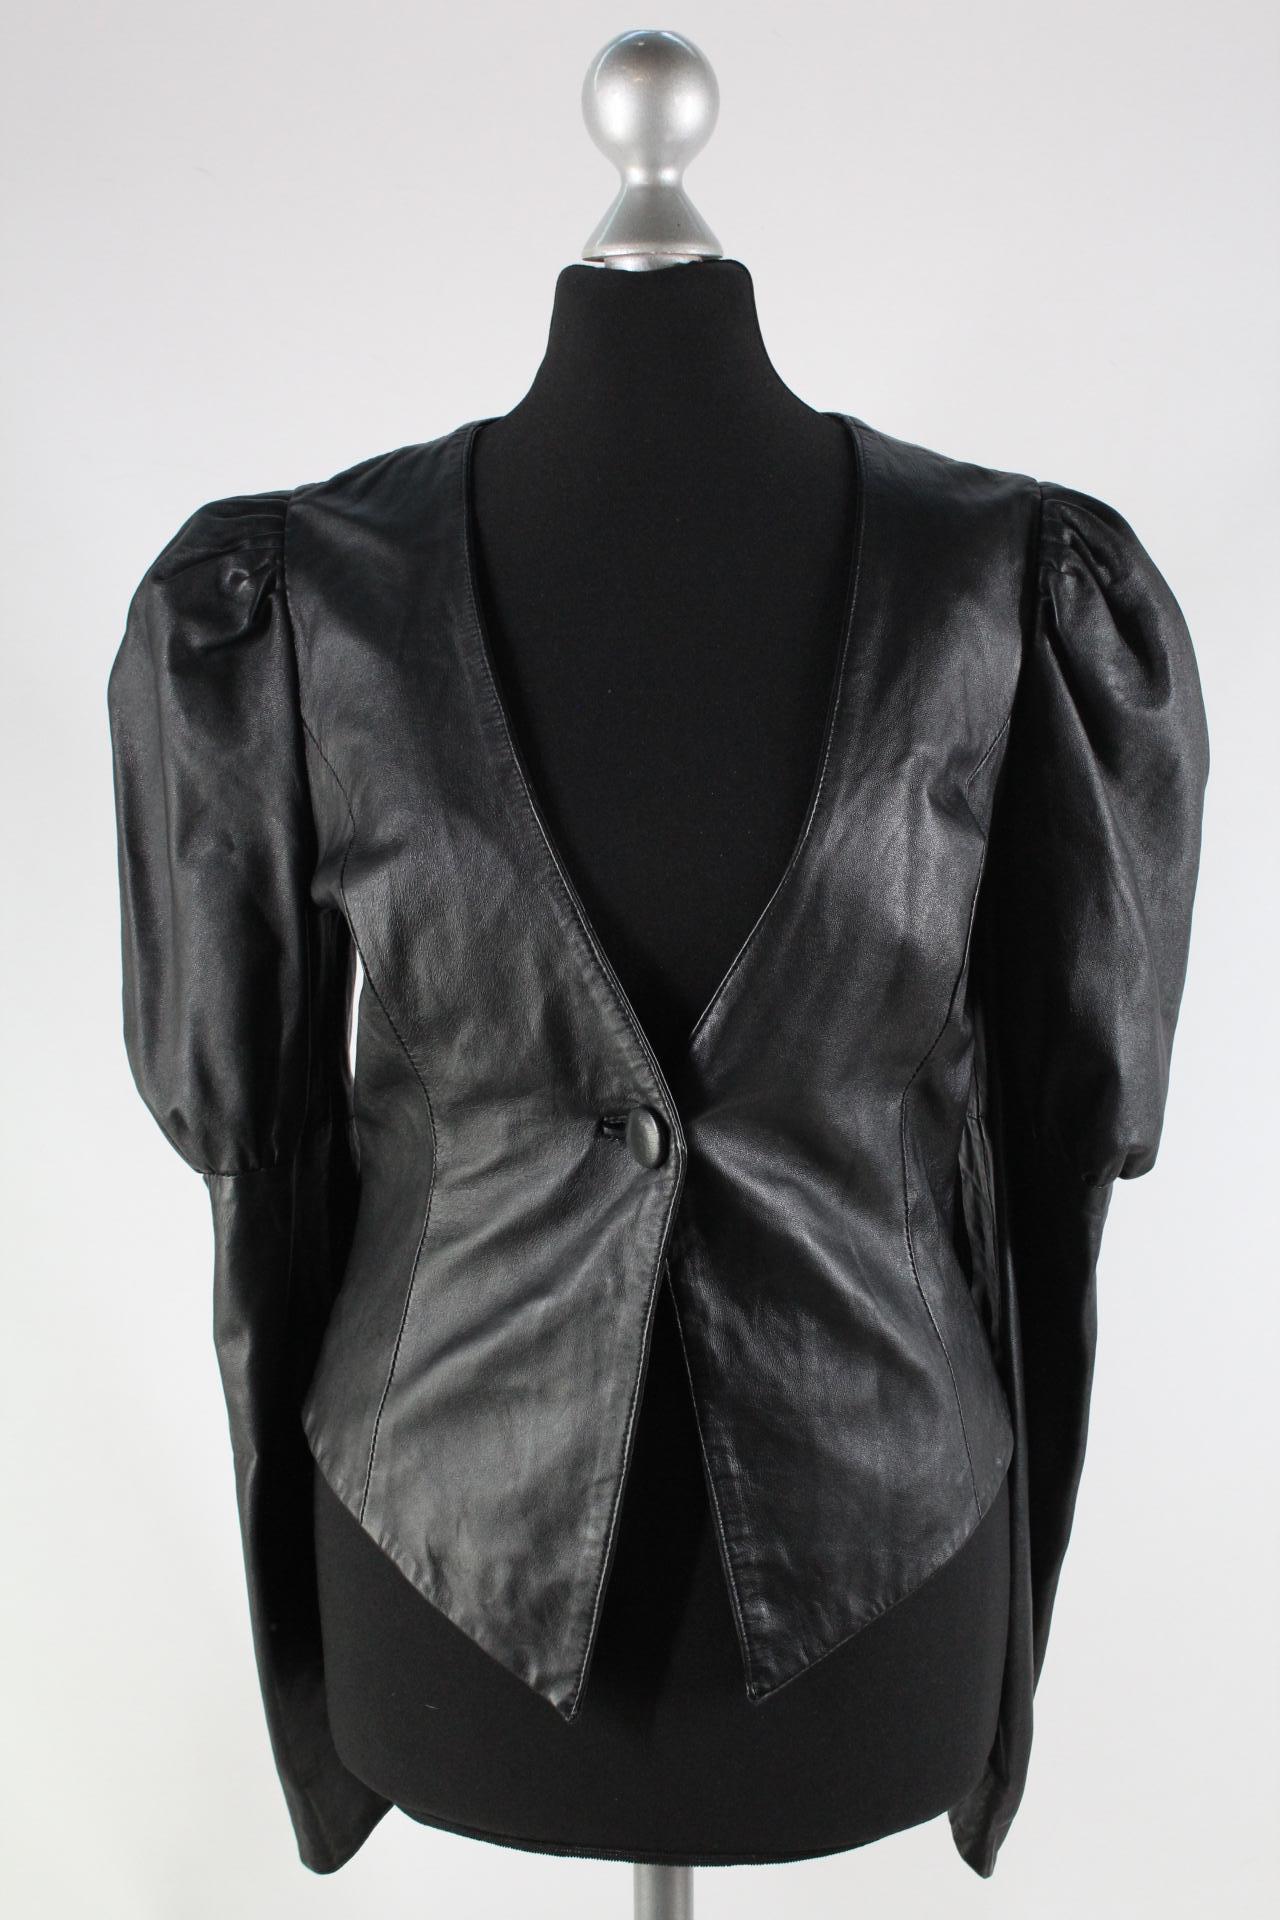 Vero Moda Damen-Lederjacke schwarz Größe 34